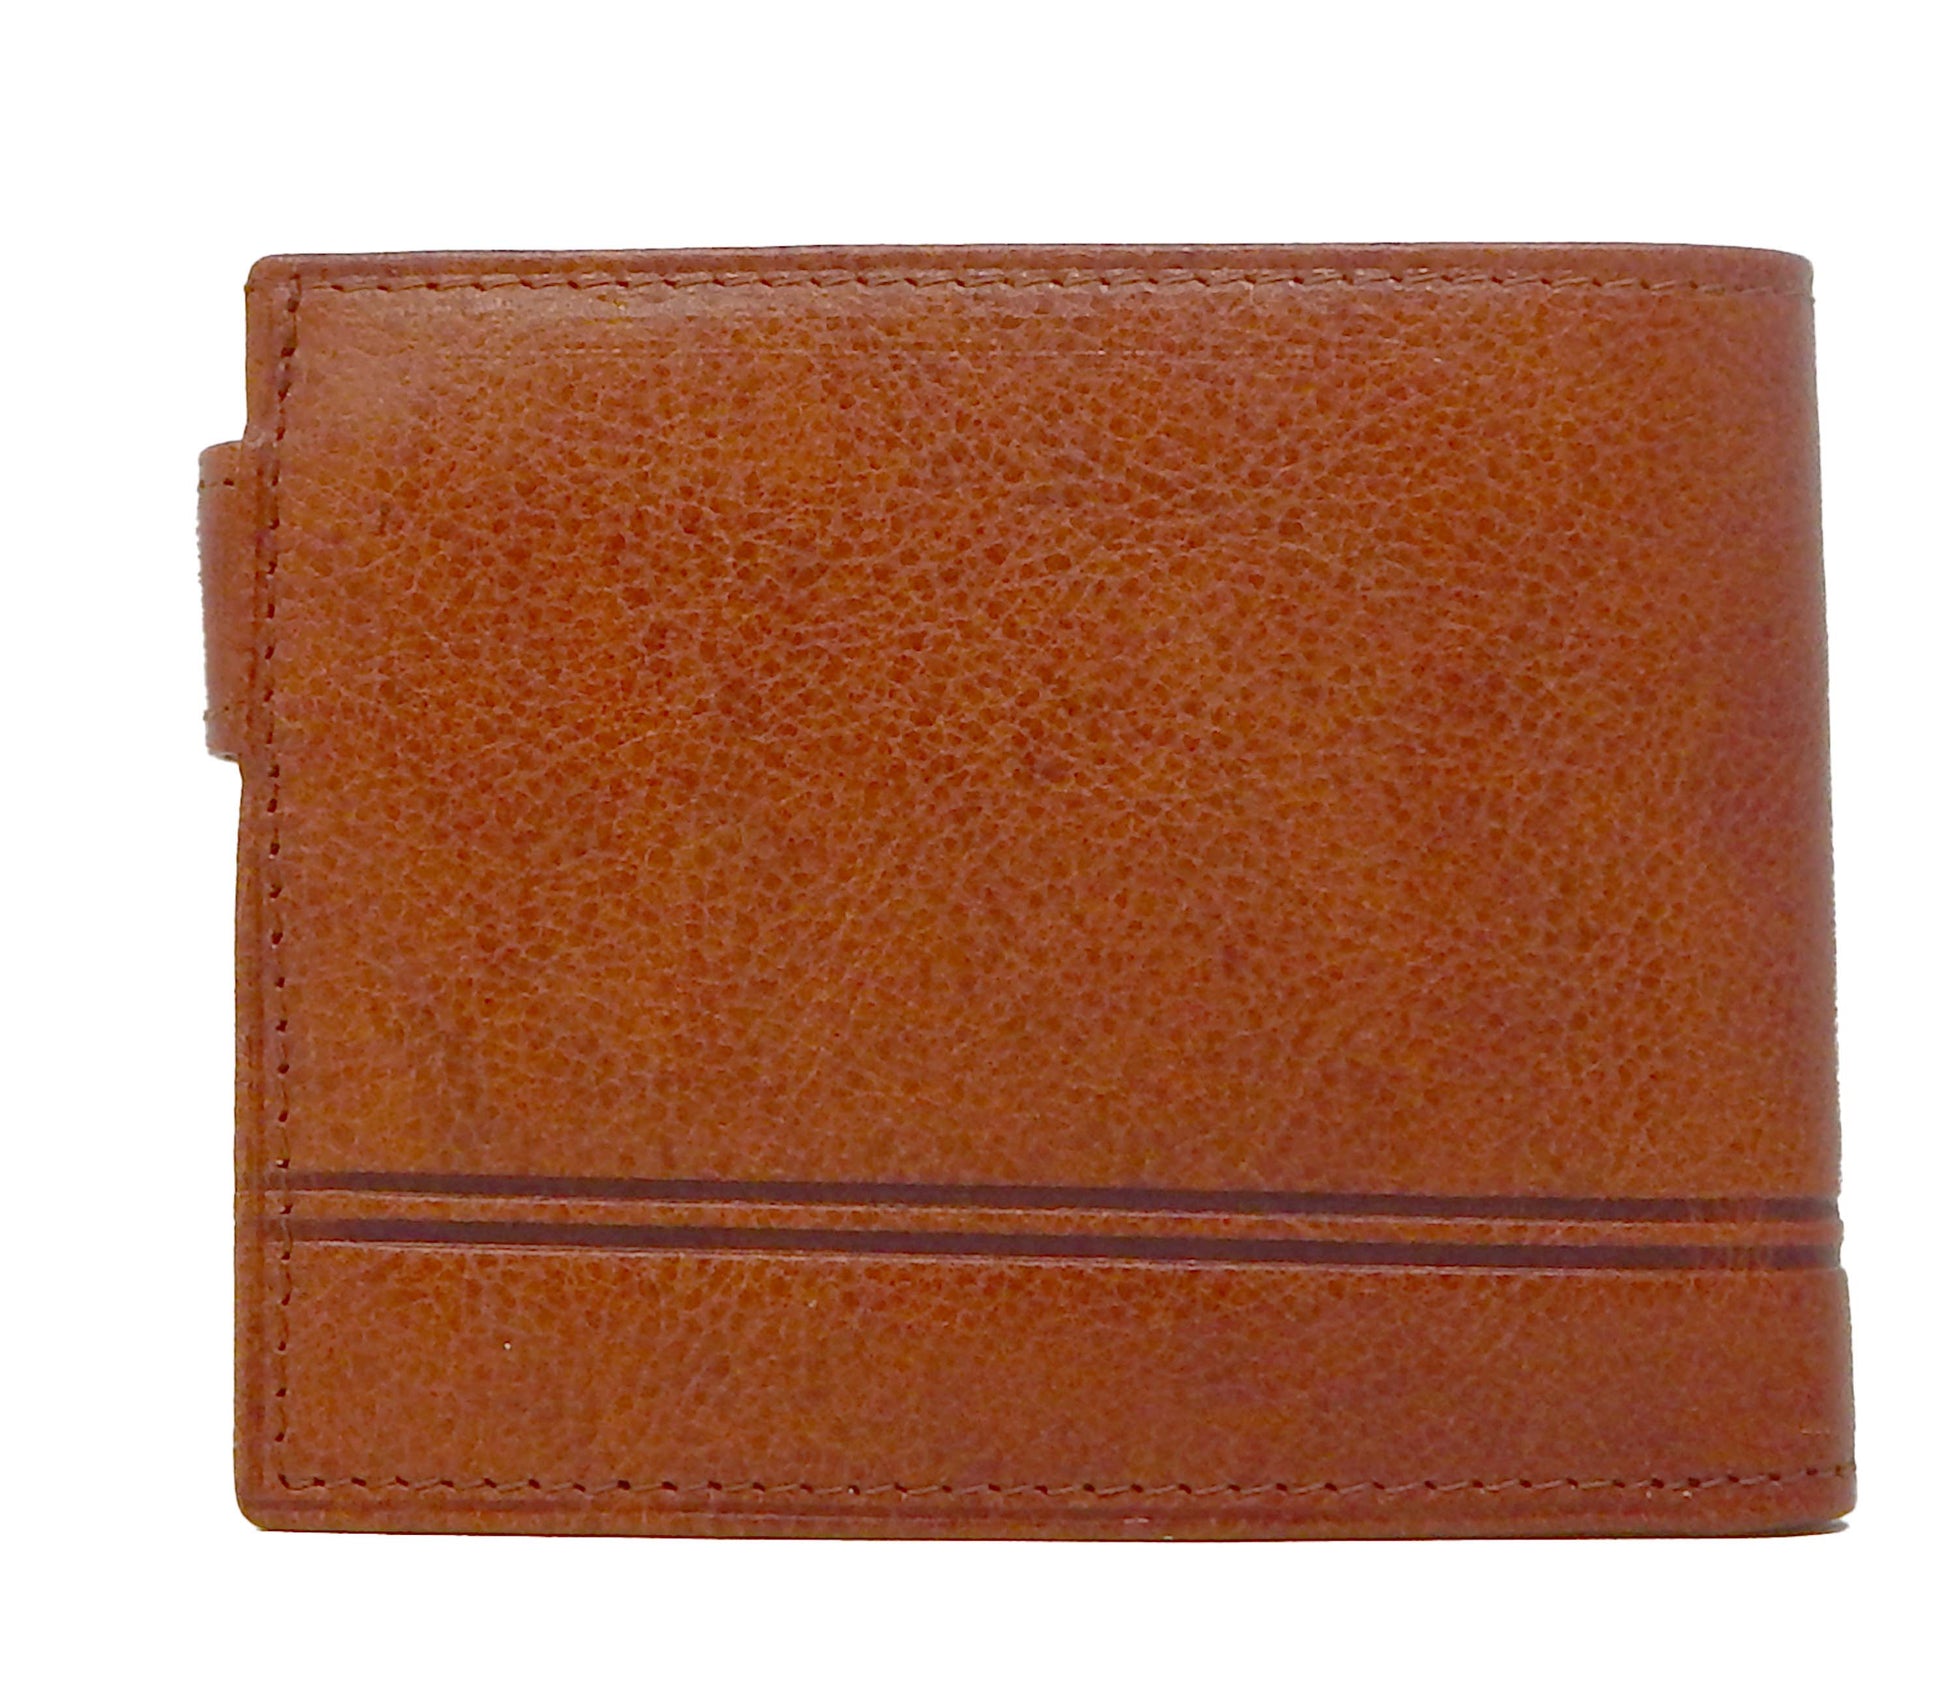 Cavalinho Men's Bifold Leather Wallet - SaddleBrown - 28610588.13.99_3